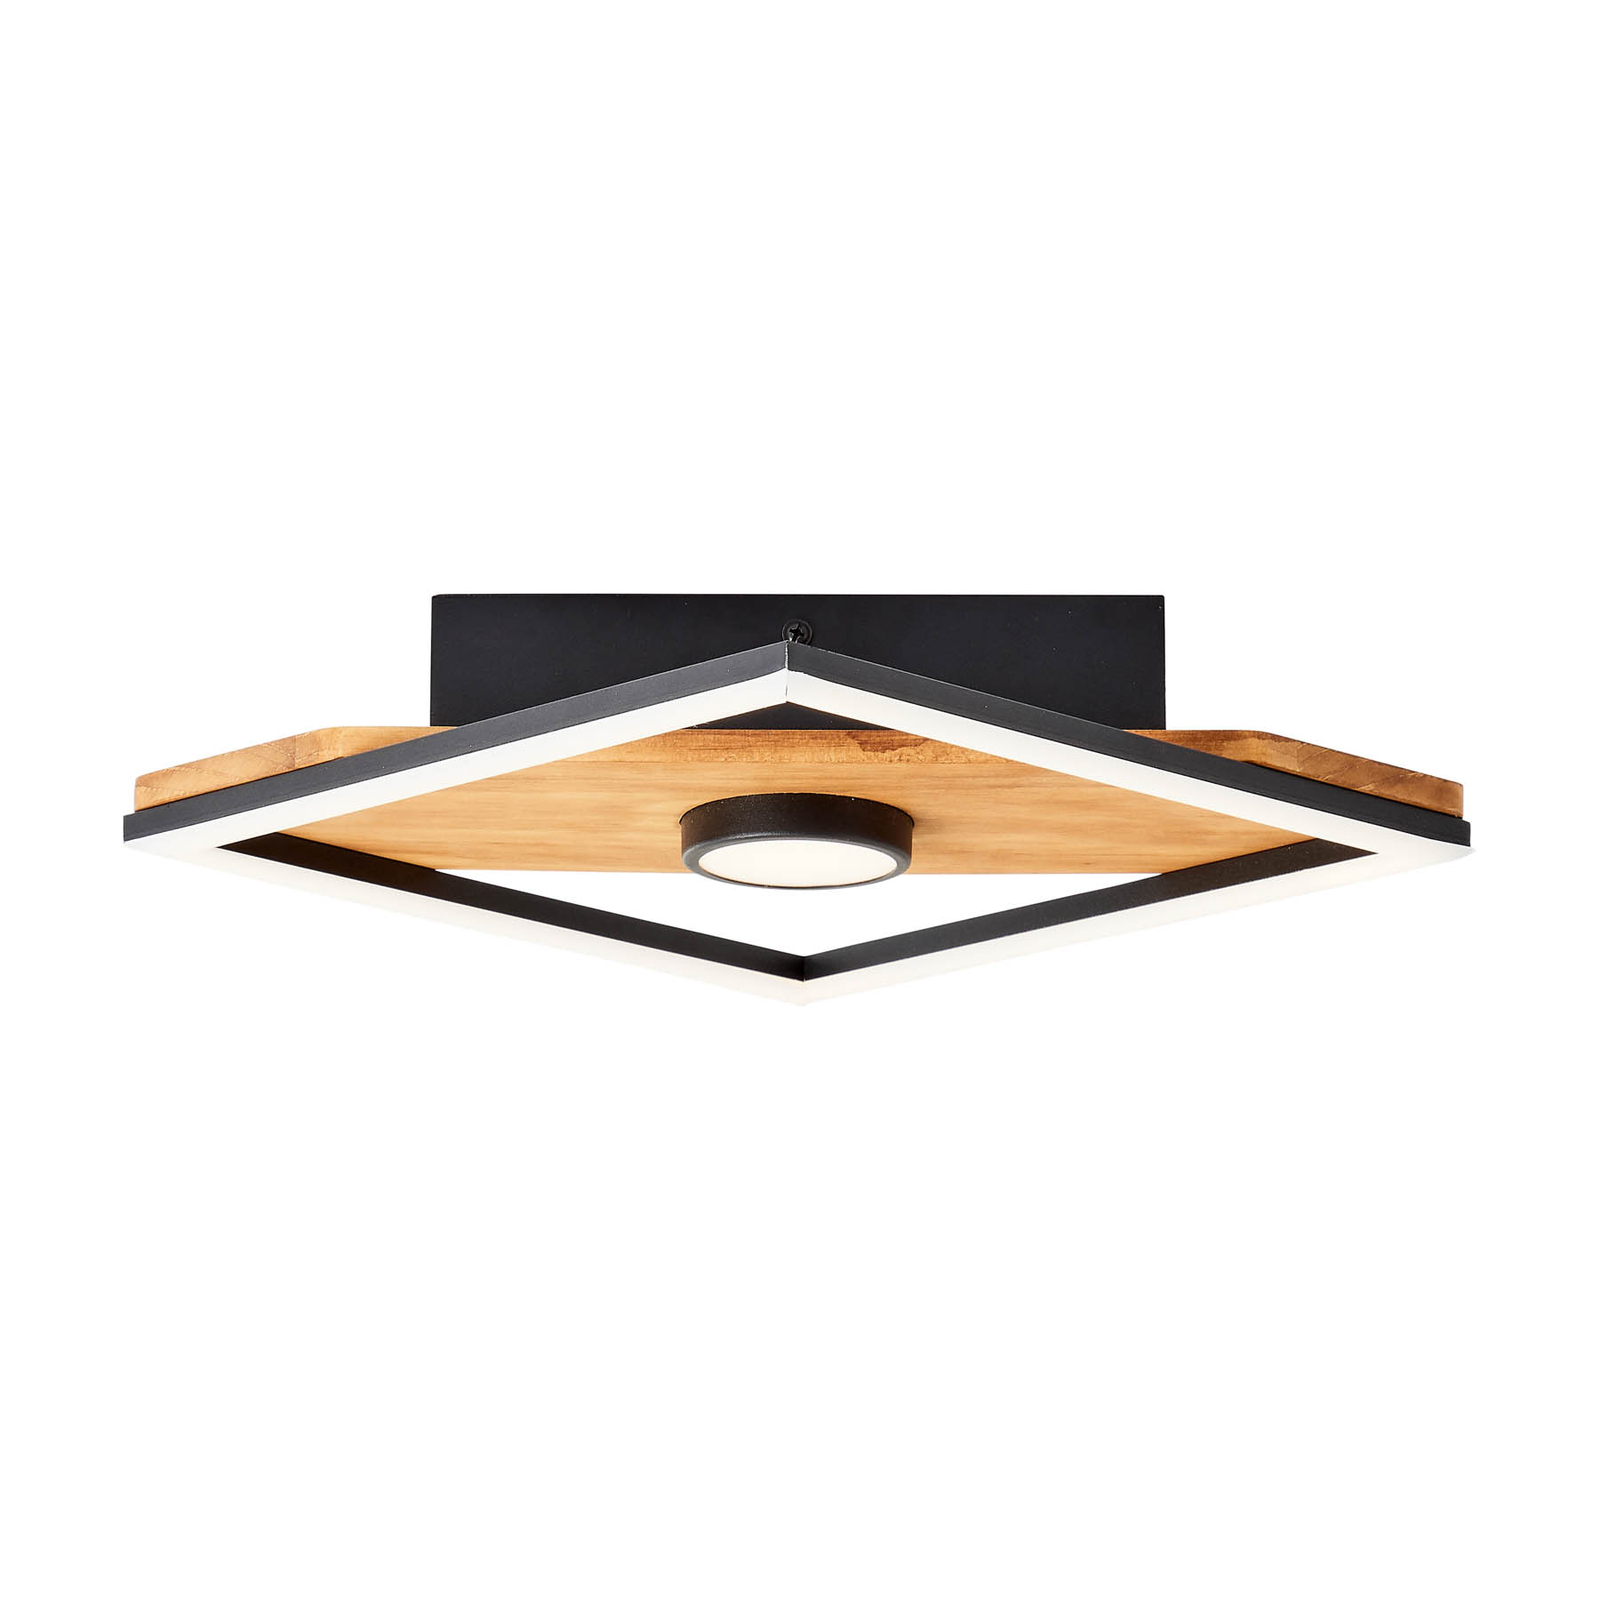 Φωτιστικό οροφής LED Woodbridge, μονής φλόγας